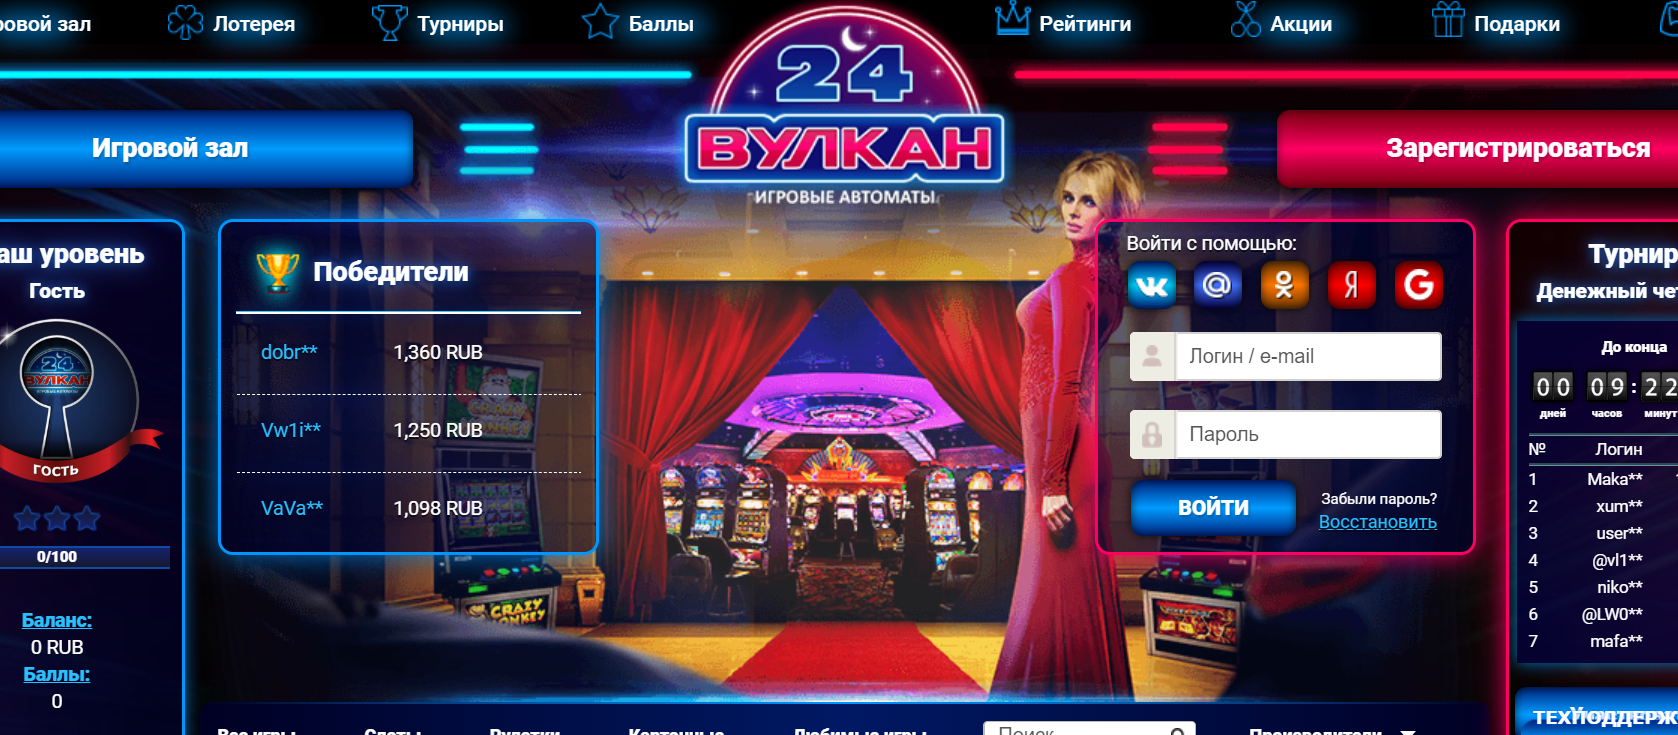 Магия удержания: рекламные уловки онлайн-казино Вулкан 24, которые привлекают и удерживают игроков